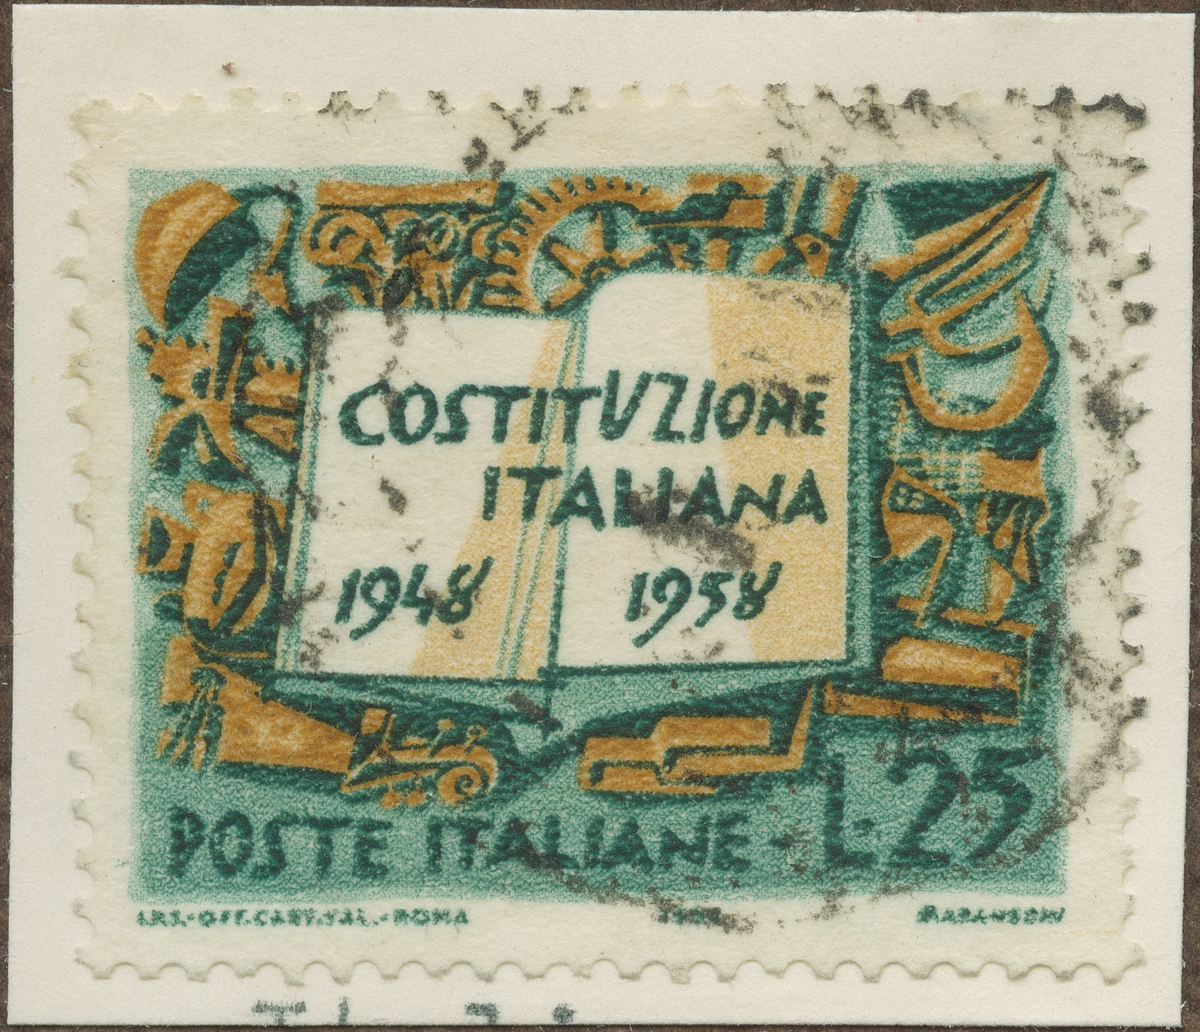 Frimärke ur Gösta Bodmans filatelistiska motivsamling, påbörjad 1950.
Frimärke från Italien, 1958. Motiv av Italienska Konstitution 10 år. 1948-1958.